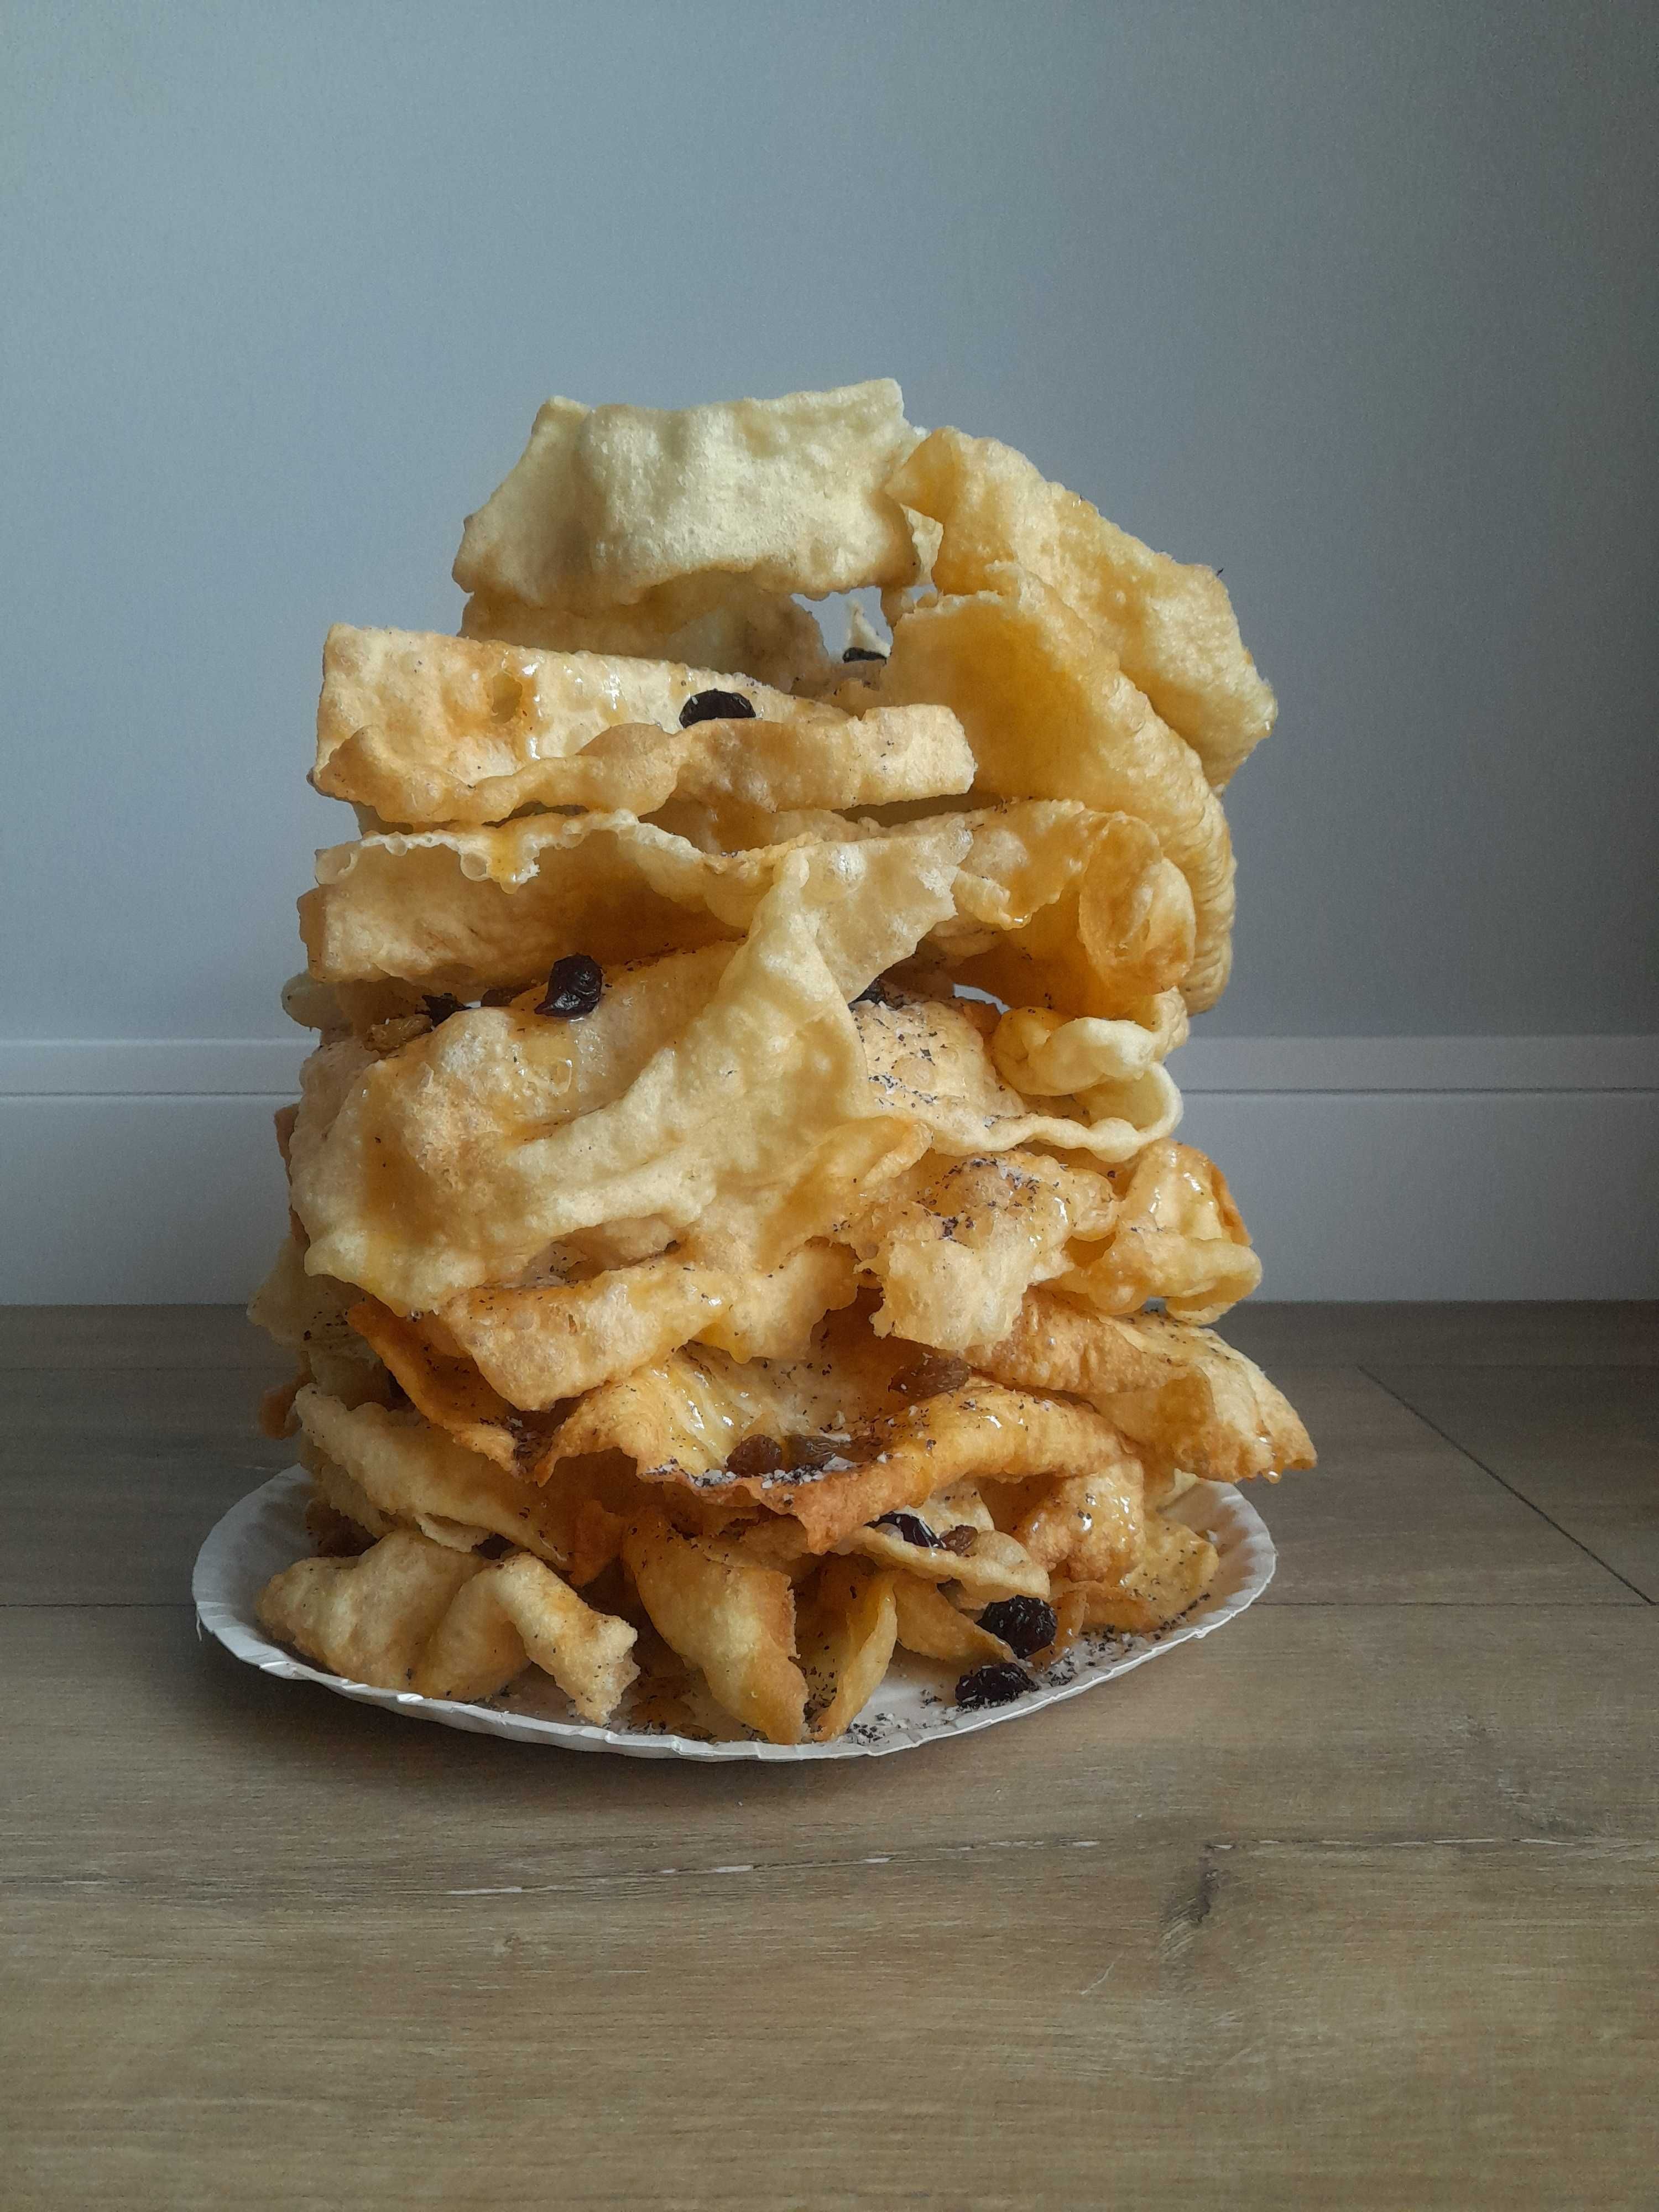 Ciasto Mrowisko Tradycyjny Podlaski Wypiek ok. 400 g sękacz faworki